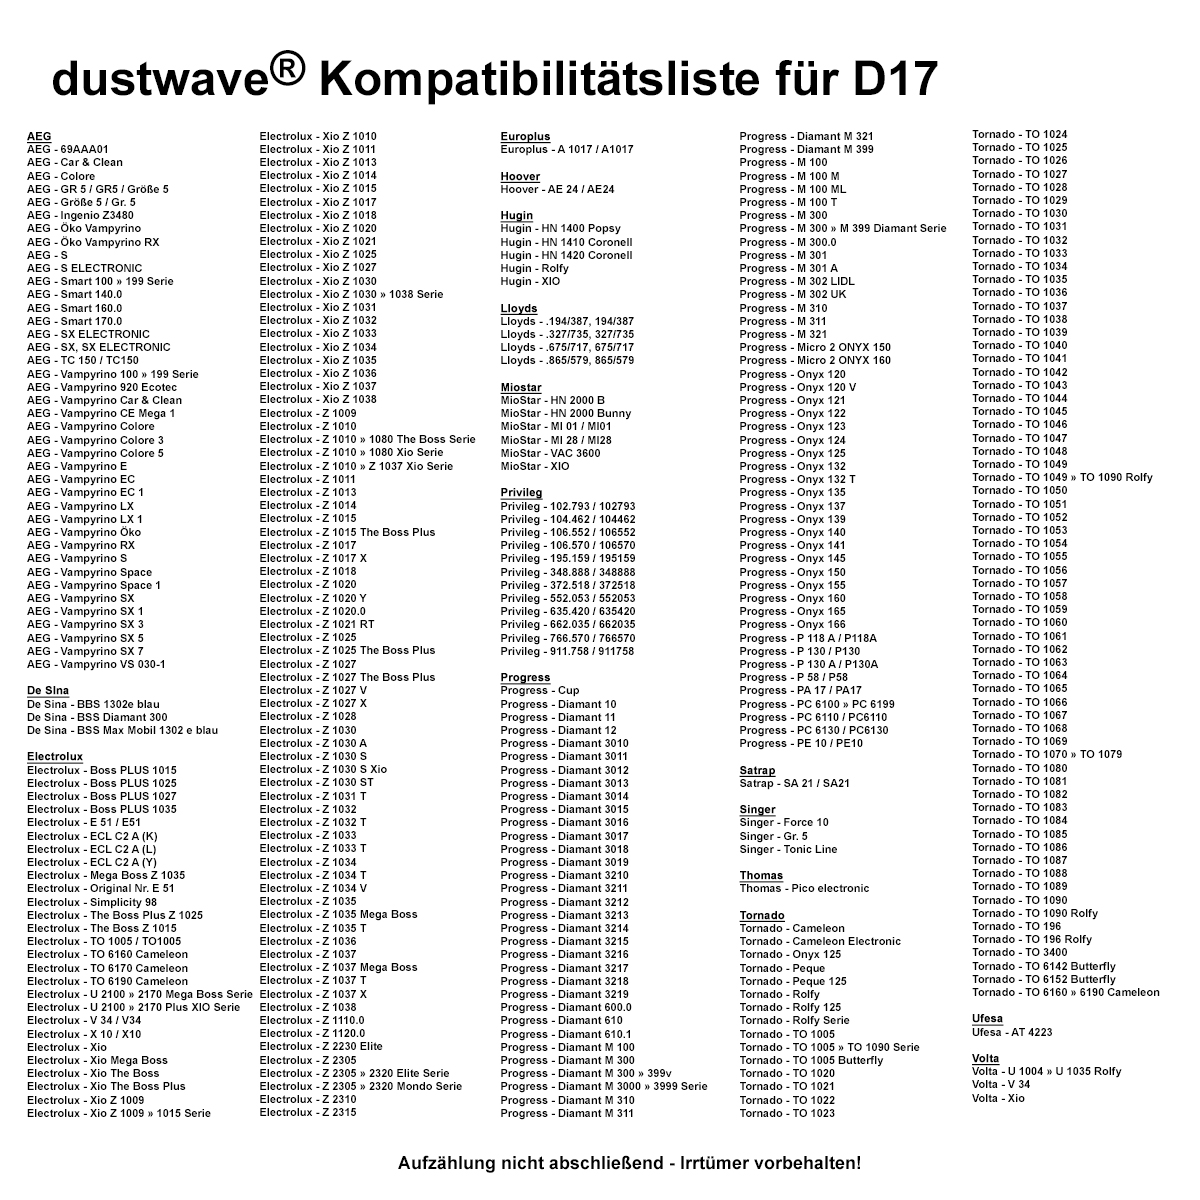 Dustwave® 10 Staubsaugerbeutel für AEG Vampyrino 920 Eco - hocheffizient mit Hygieneverschluss - Made in Germany